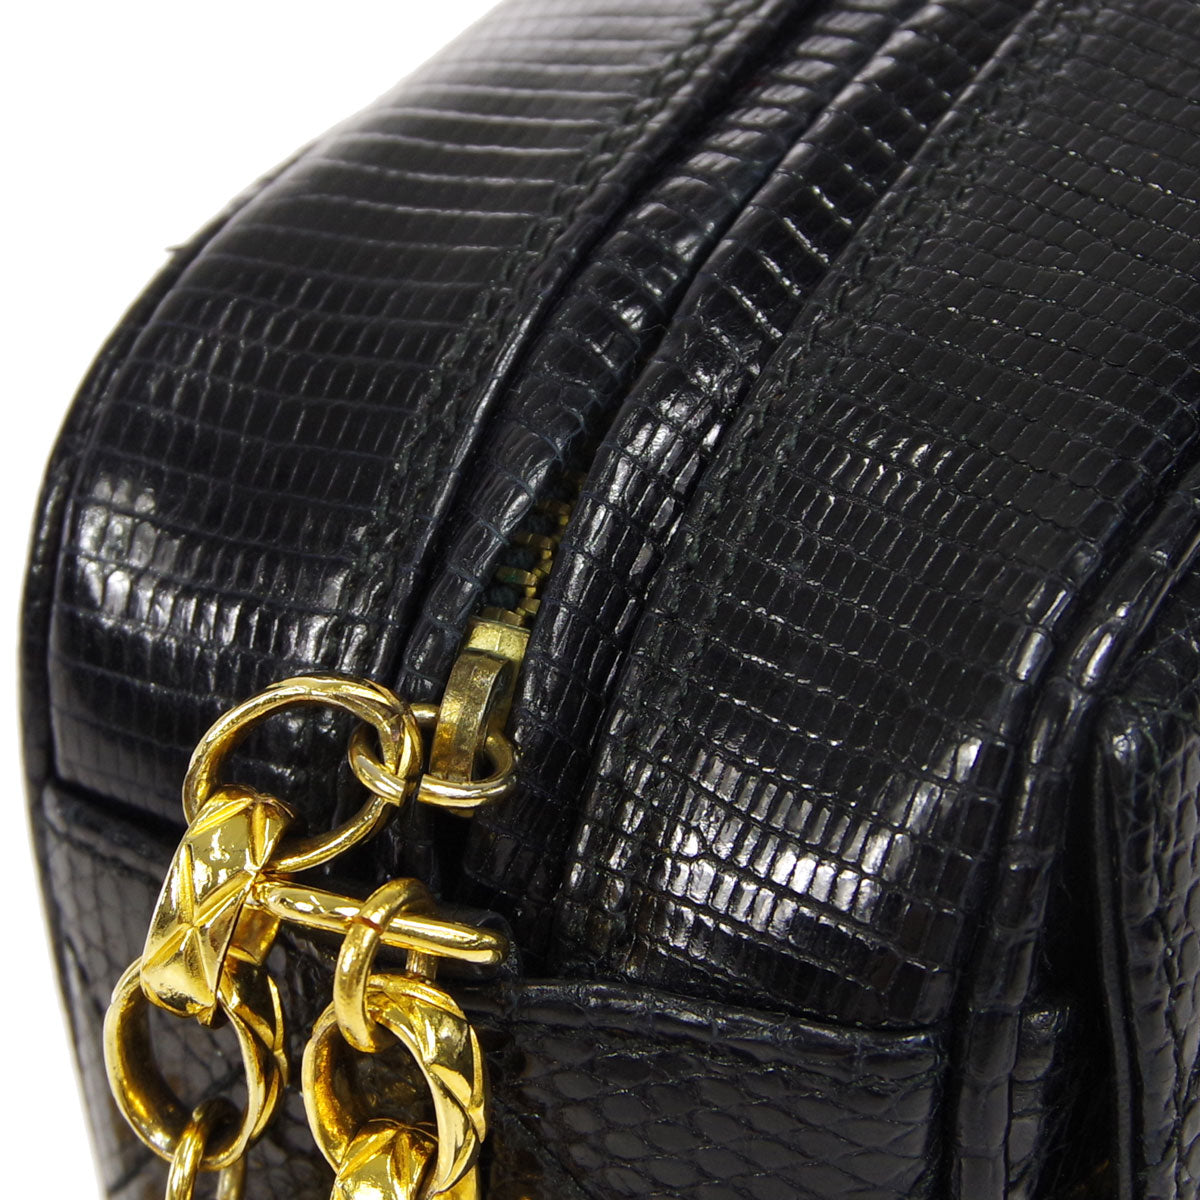 Chanel Vintage Black Quilted Lizard Camera Bag